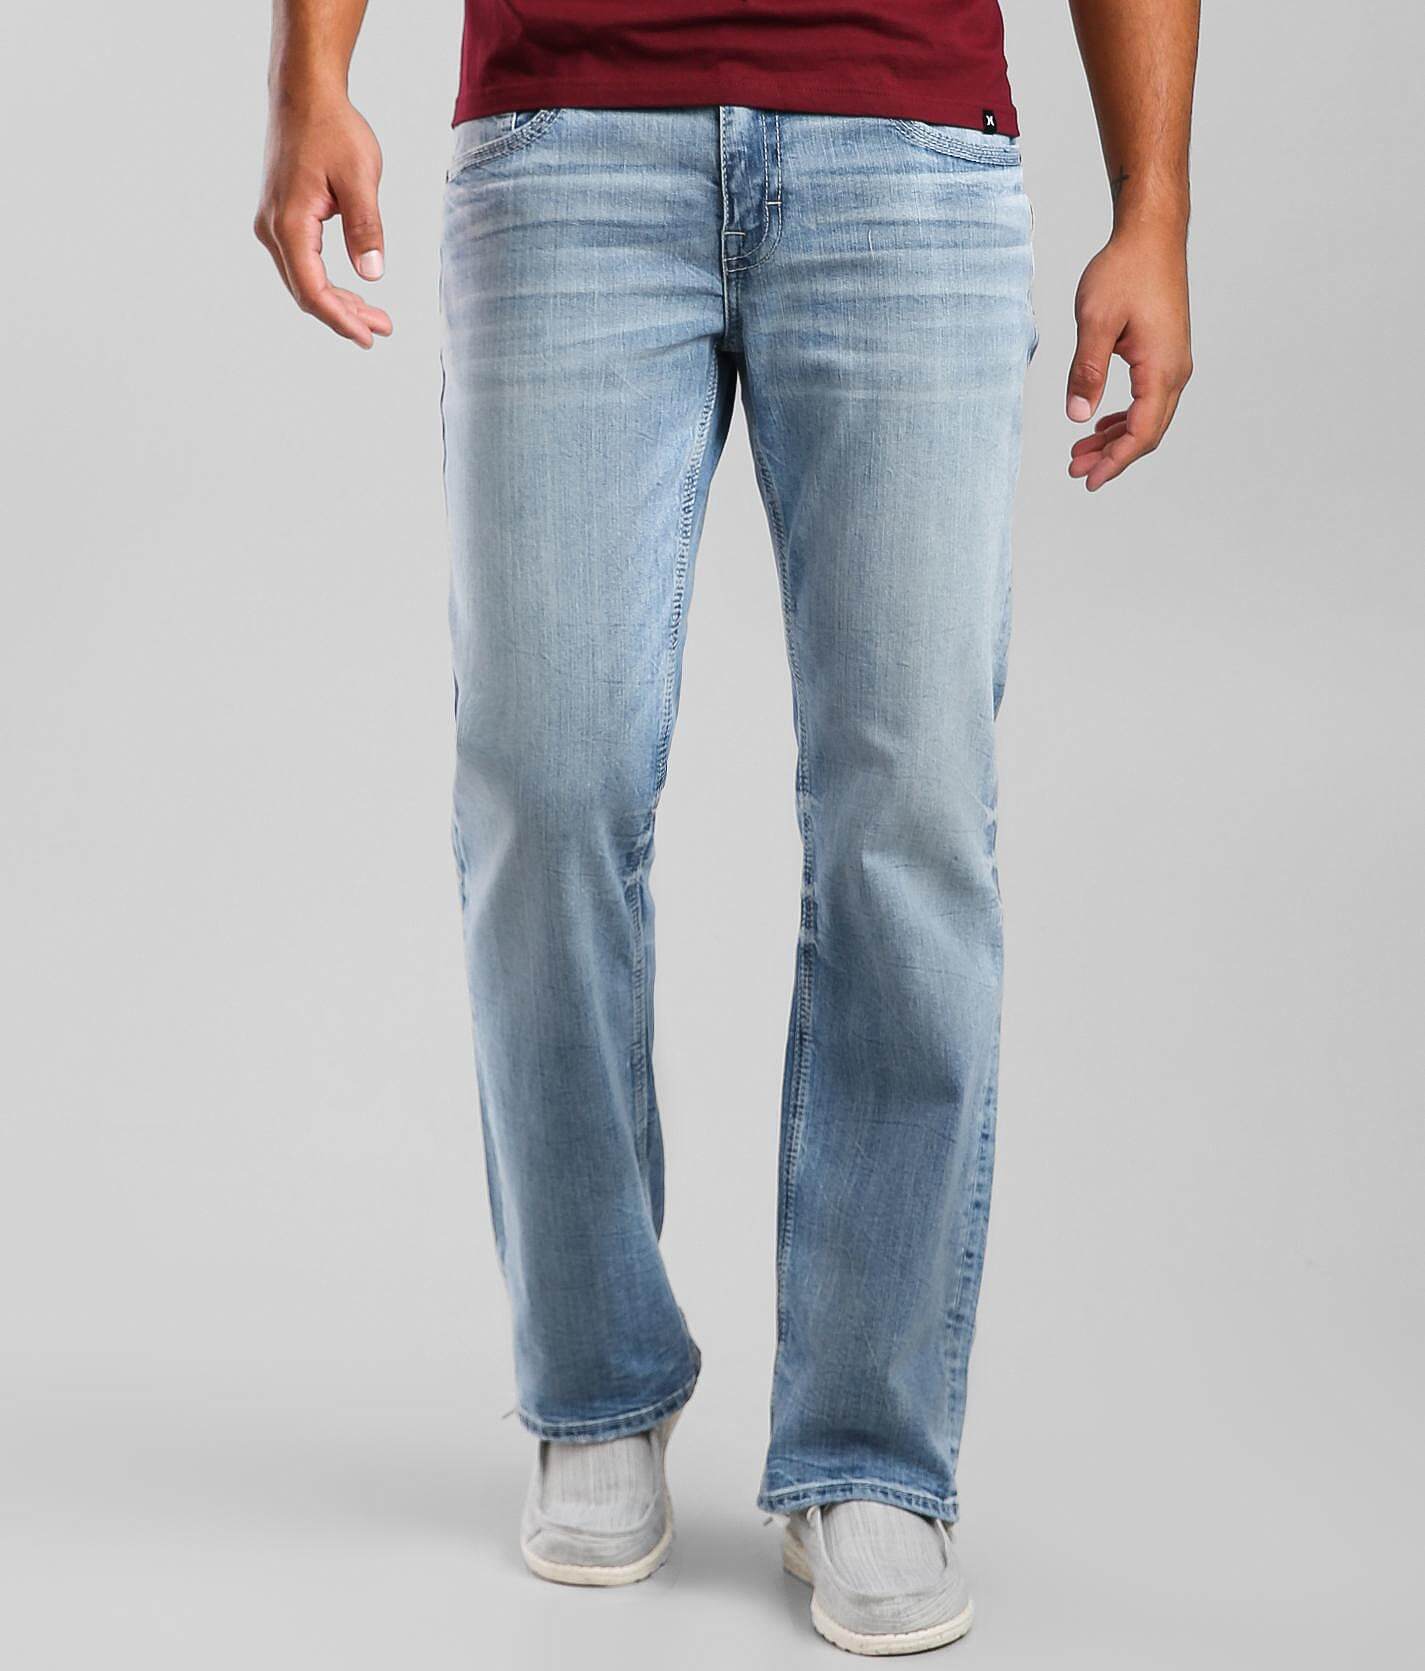 bke jeans cheap